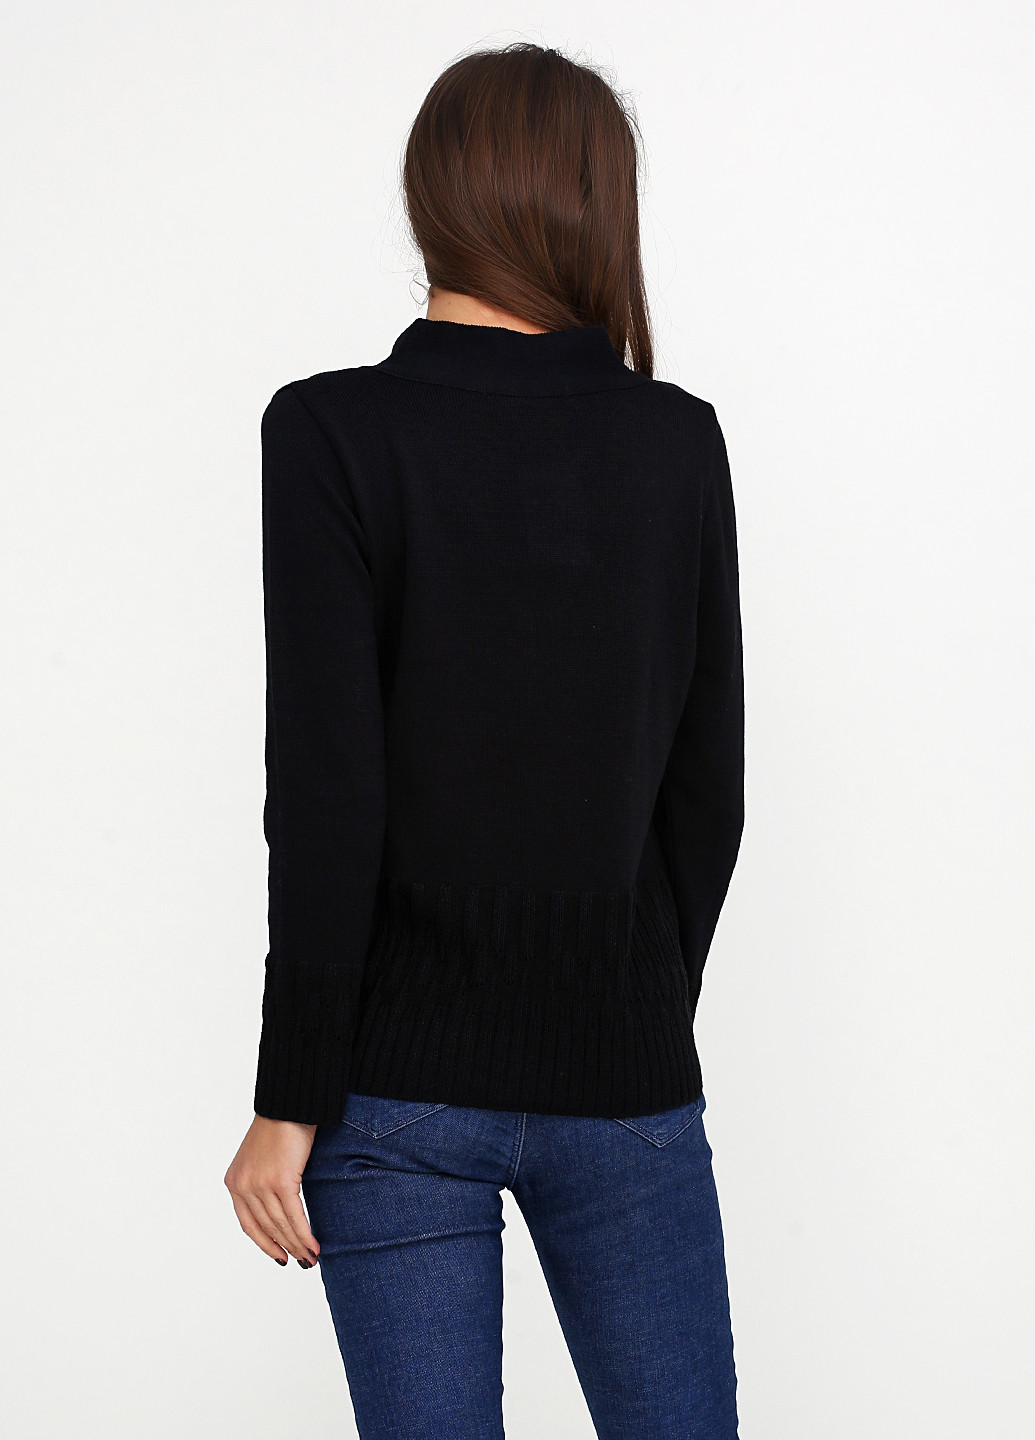 Черный демисезонный пуловер пуловер Skovhuus